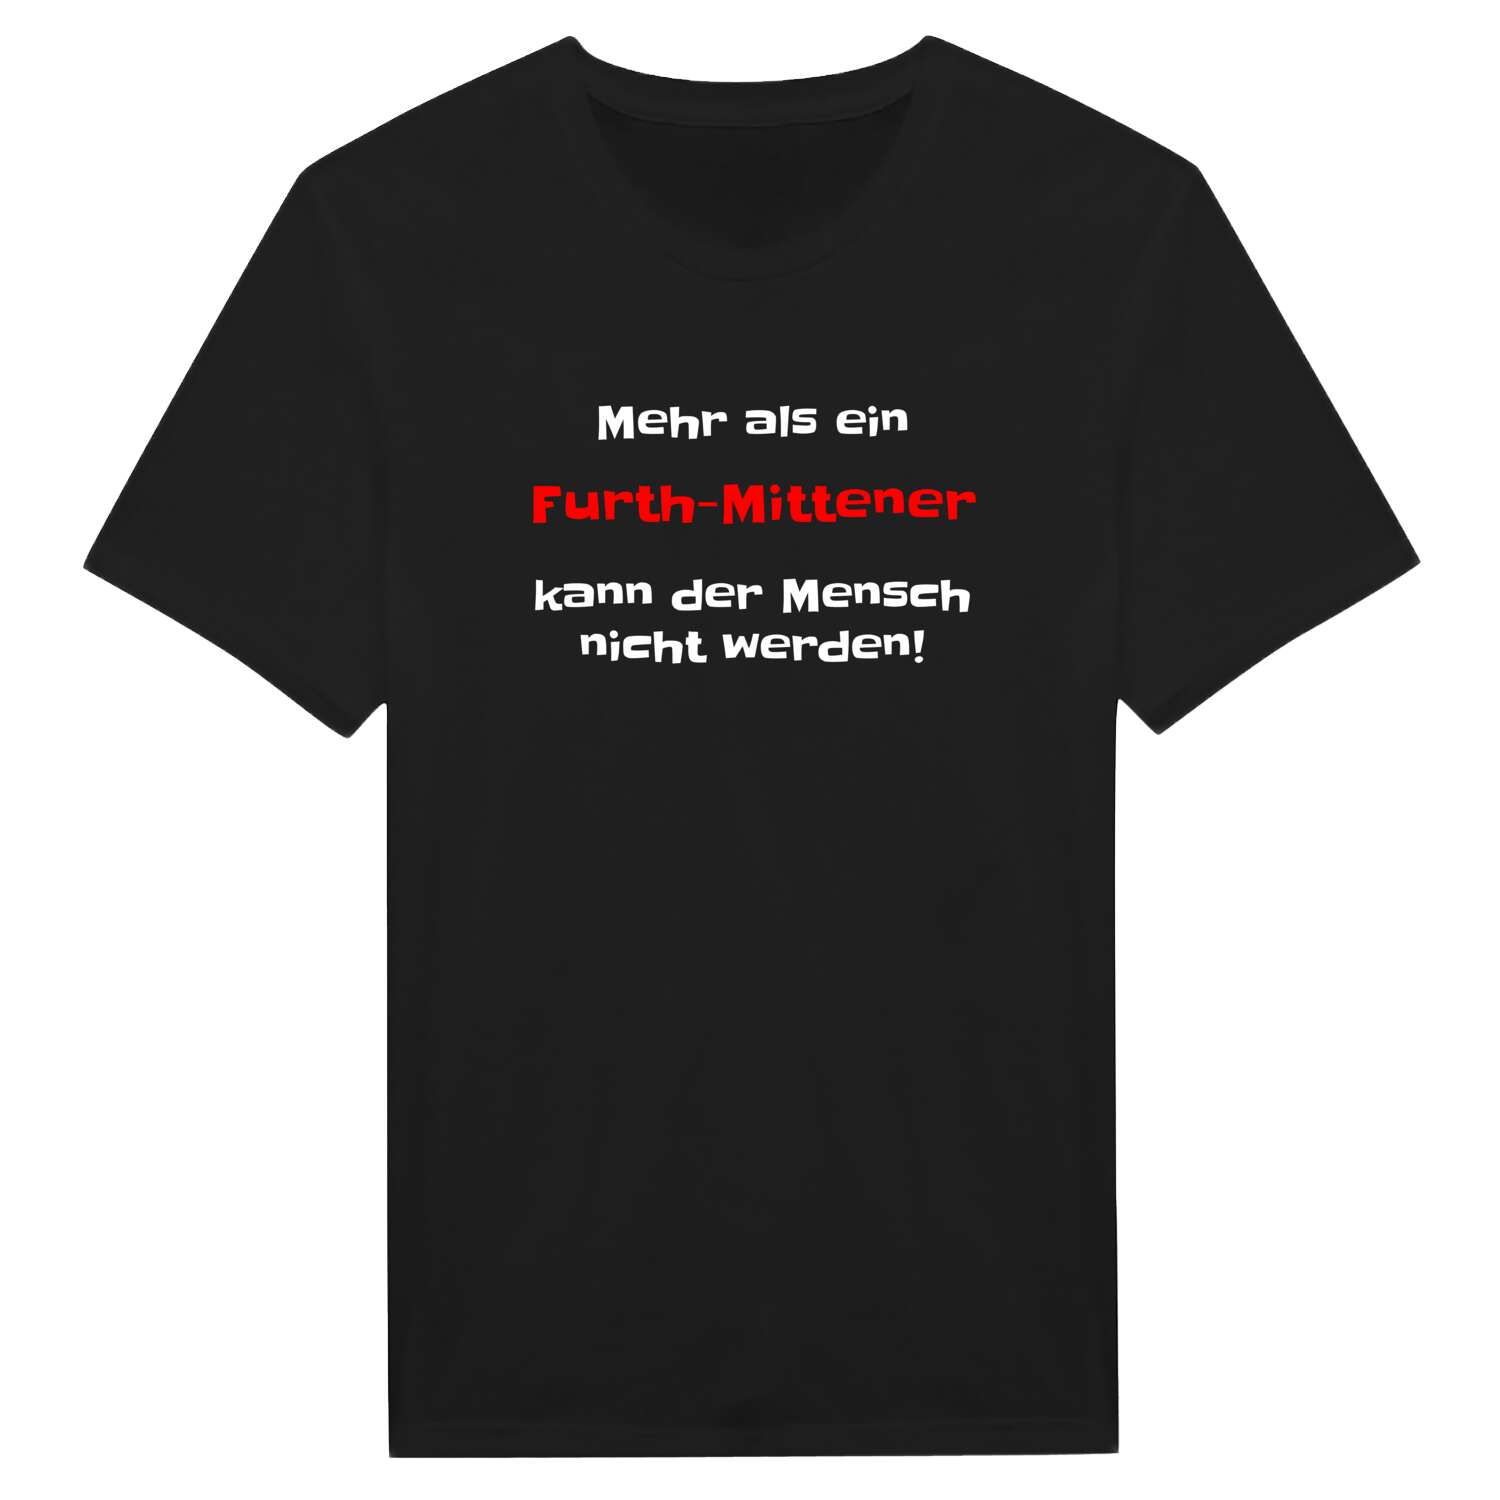 Furth-Mitte T-Shirt »Mehr als ein«